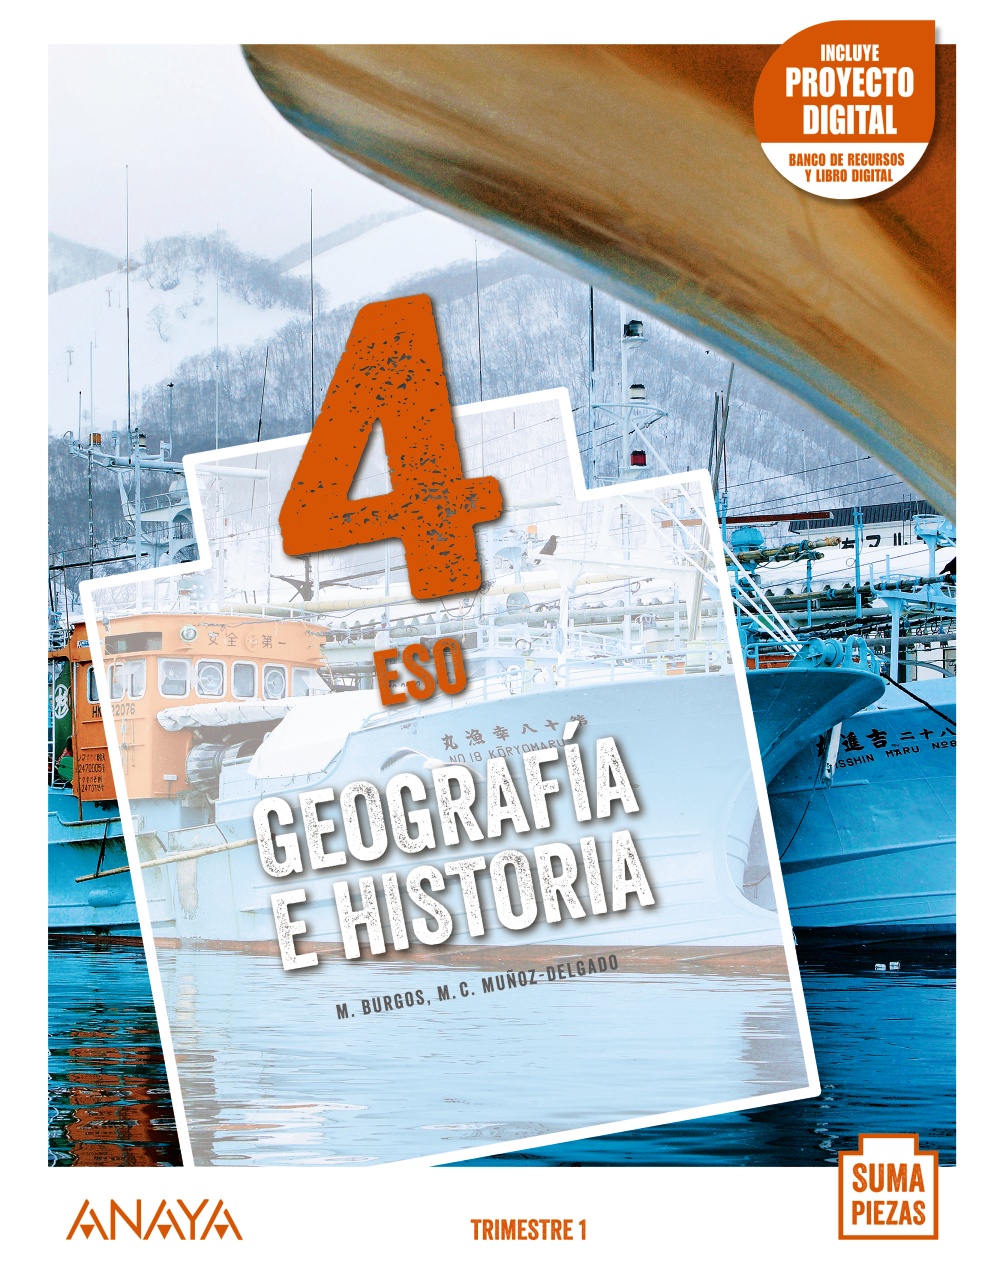 Solucionario Geografia e Historia 4 ESO Anaya Suma Piezas PDF Ejercicios Resueltos-pdf